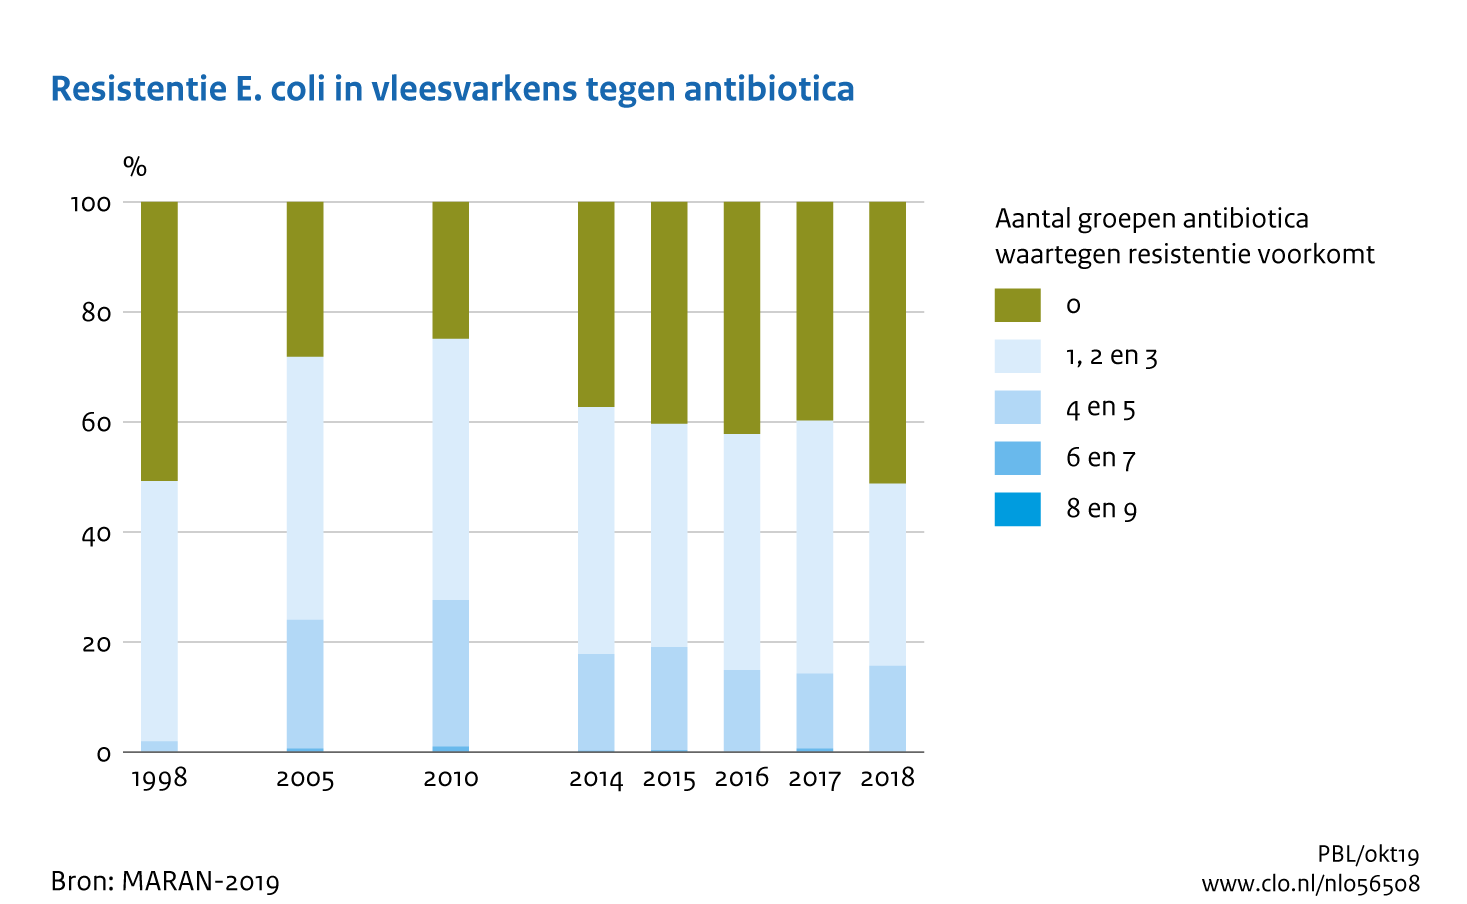 Figuur Resistentie E.coli in vleesvarkens tegen antibiotica. Meervoudige resistentie tegen antibiotica neemt af. . In de rest van de tekst wordt deze figuur uitgebreider uitgelegd.